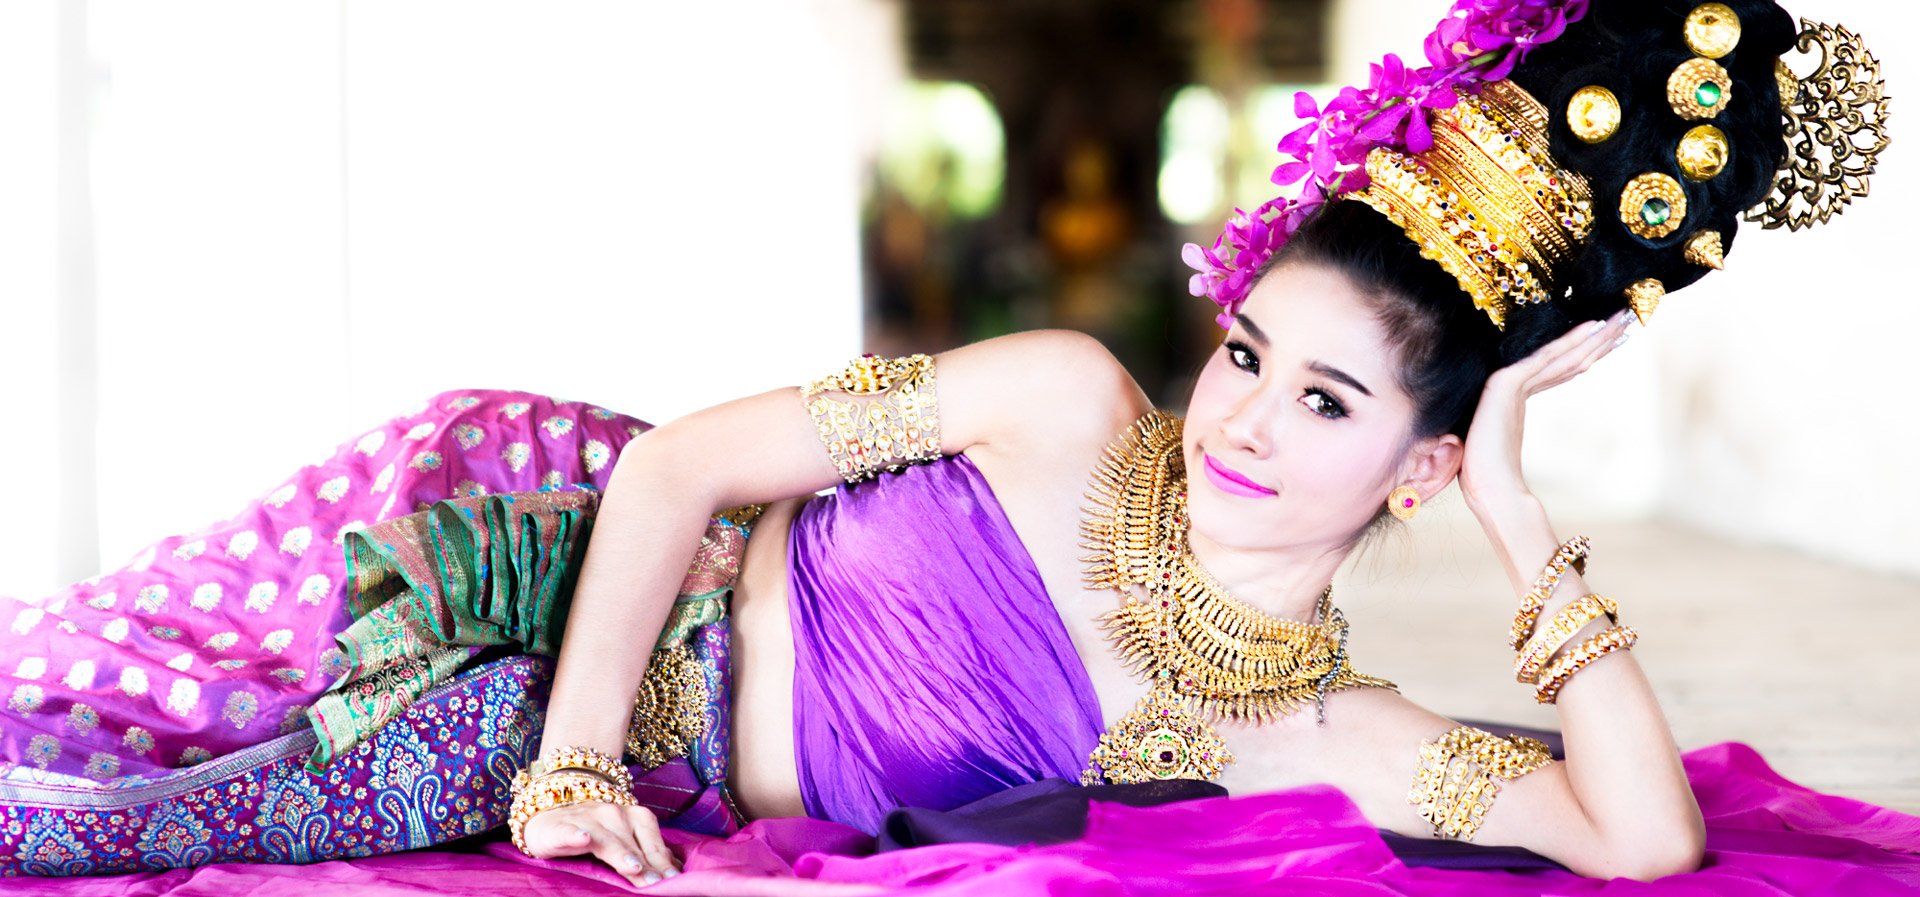 Thai dancer resting, for photographer terms illustration